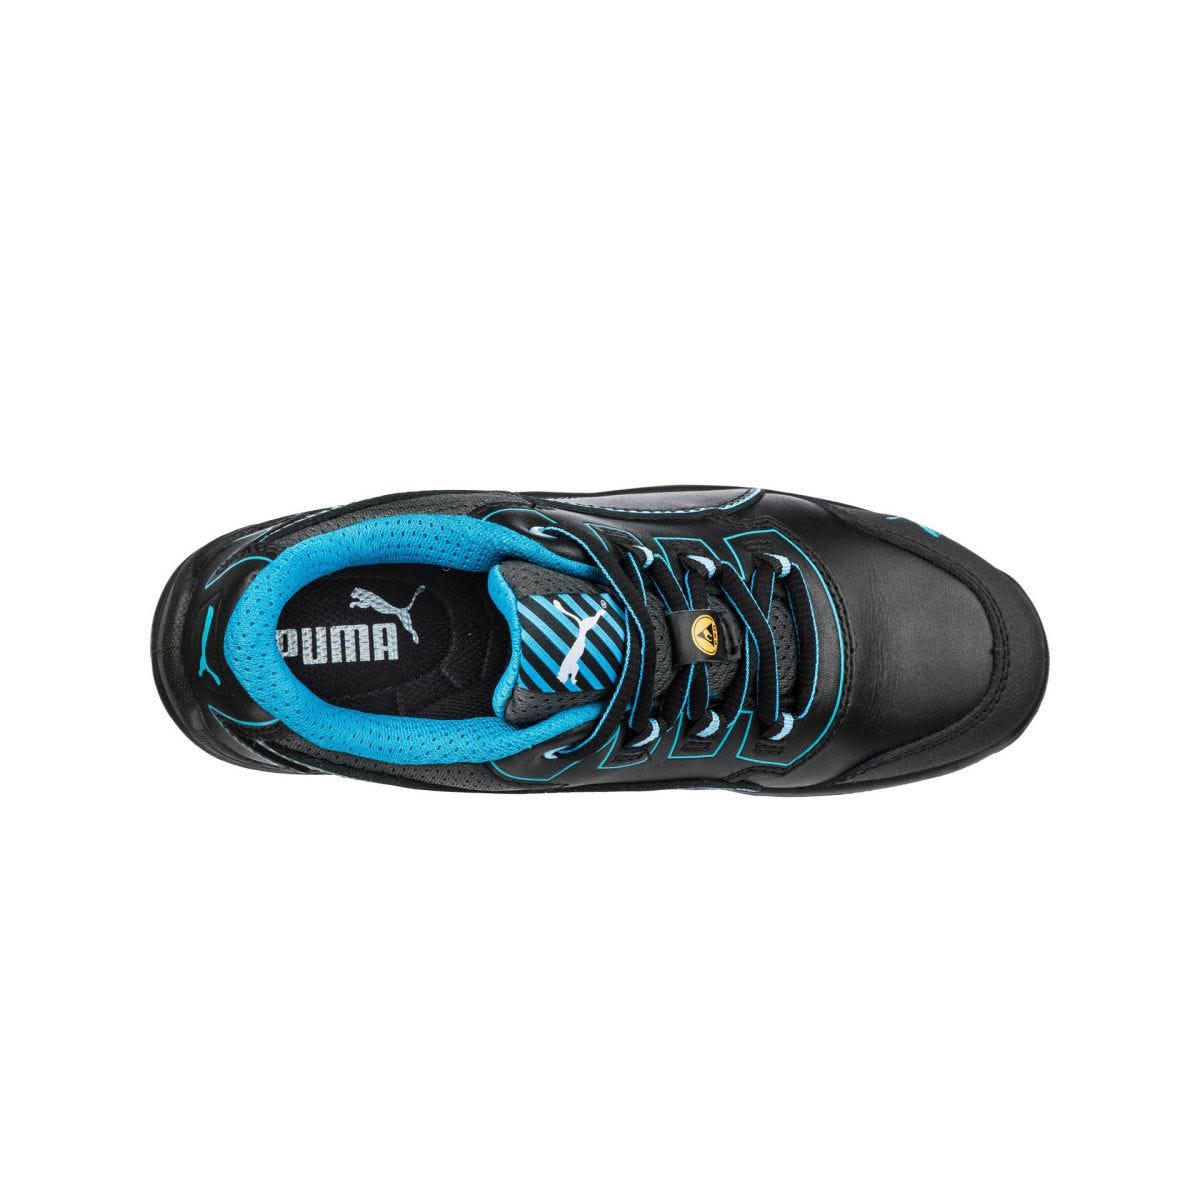 Chaussures de sécurité Niobe low WNS S3 ESD SRC bleu - Puma - Taille 40 2